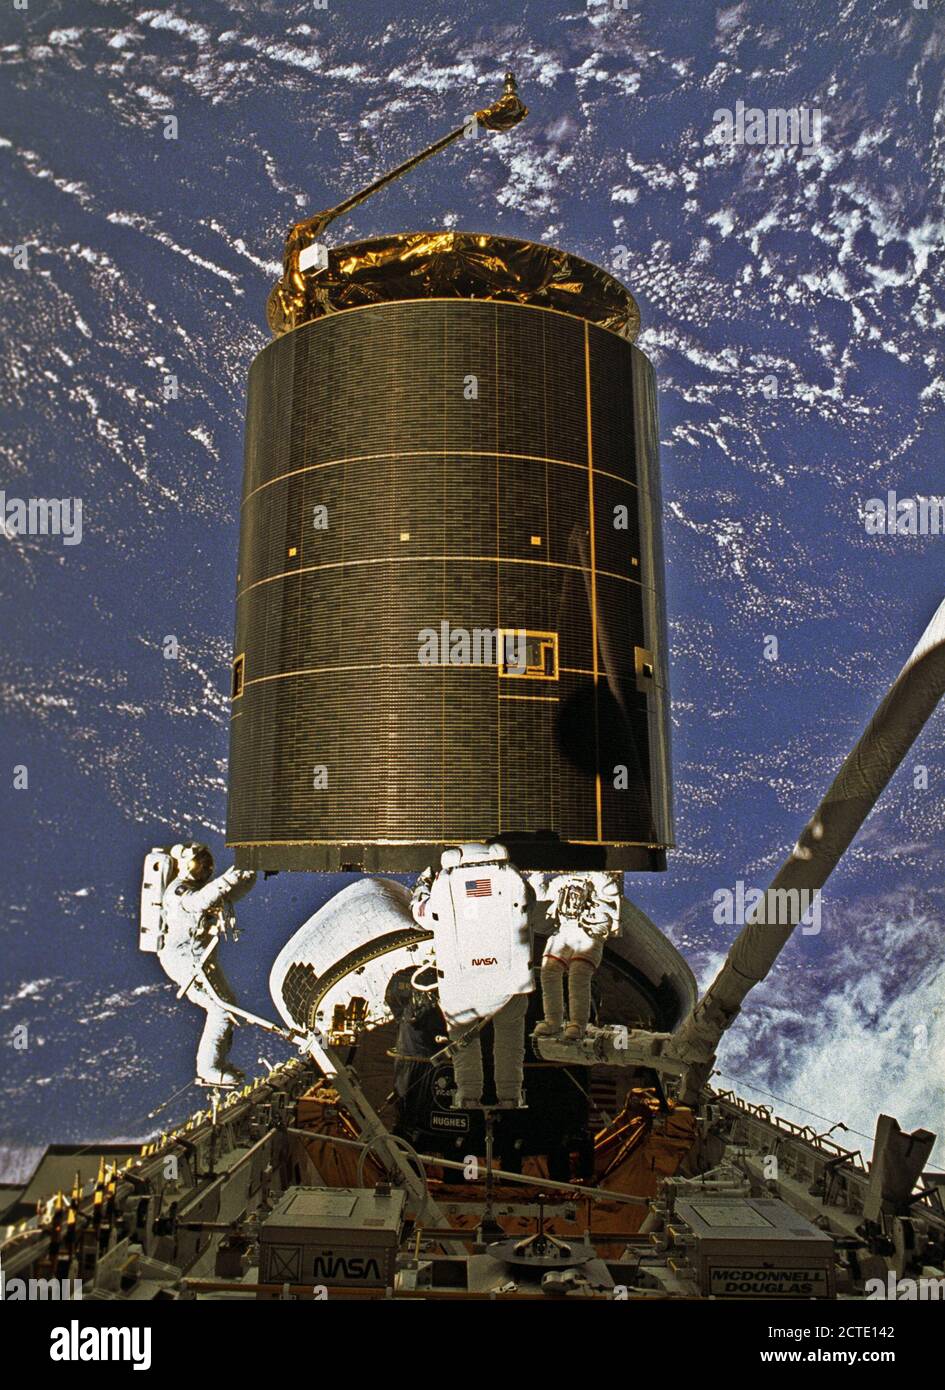 STS-49, il primo volo della navetta spaziale orbitare adoperano, sollevata dalla piazzola di lancio 39B su Maggio 7, 1992 a 6:40 PM CDT. Il servizio STS-49 missione fu il primo negli Stati Uniti volo orbitale a funzione 4 attività extravehicular (EVA), e il primo volo per coinvolgere 3 membri di equipaggio che lavorano simultaneamente al di fuori della navicella spaziale. L'obiettivo primario era la cattura e la ridistribuzione dell'INTELSAT VI (F-3), un satellite di comunicazione internazionale per il satellite di telecomunicazioni organizzazione, che è stato bloccato in un orbita inutilizzabile sin dal suo lancio a bordo del razzo Titan nel marzo 1990. In questo o Foto Stock